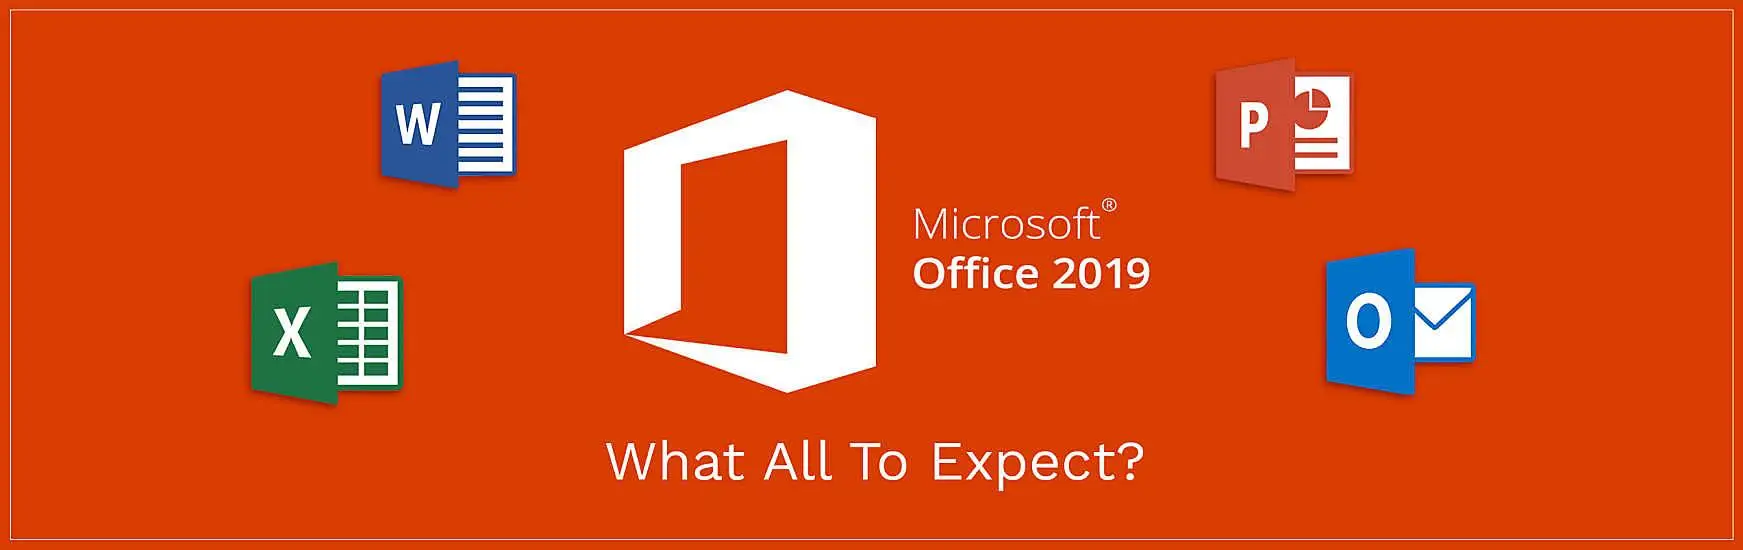 [Windows] Office 2019 专业版安装包 + 破解工具 + 一键激活 